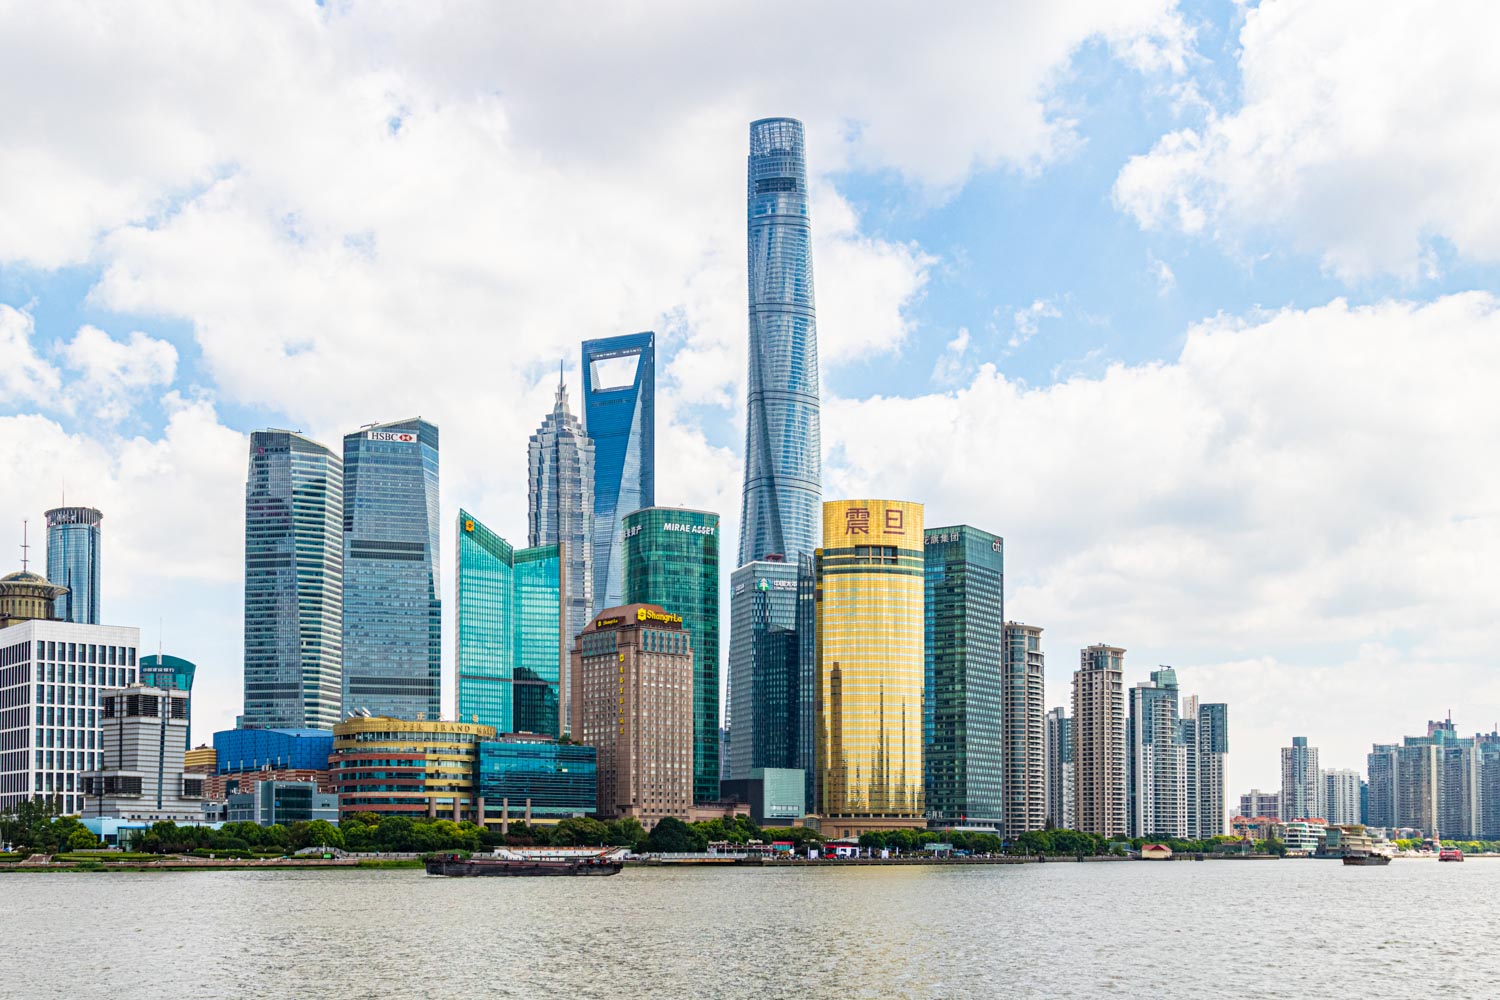 127階建ての超高層ビル『上海中心』高さはなんと632メートル